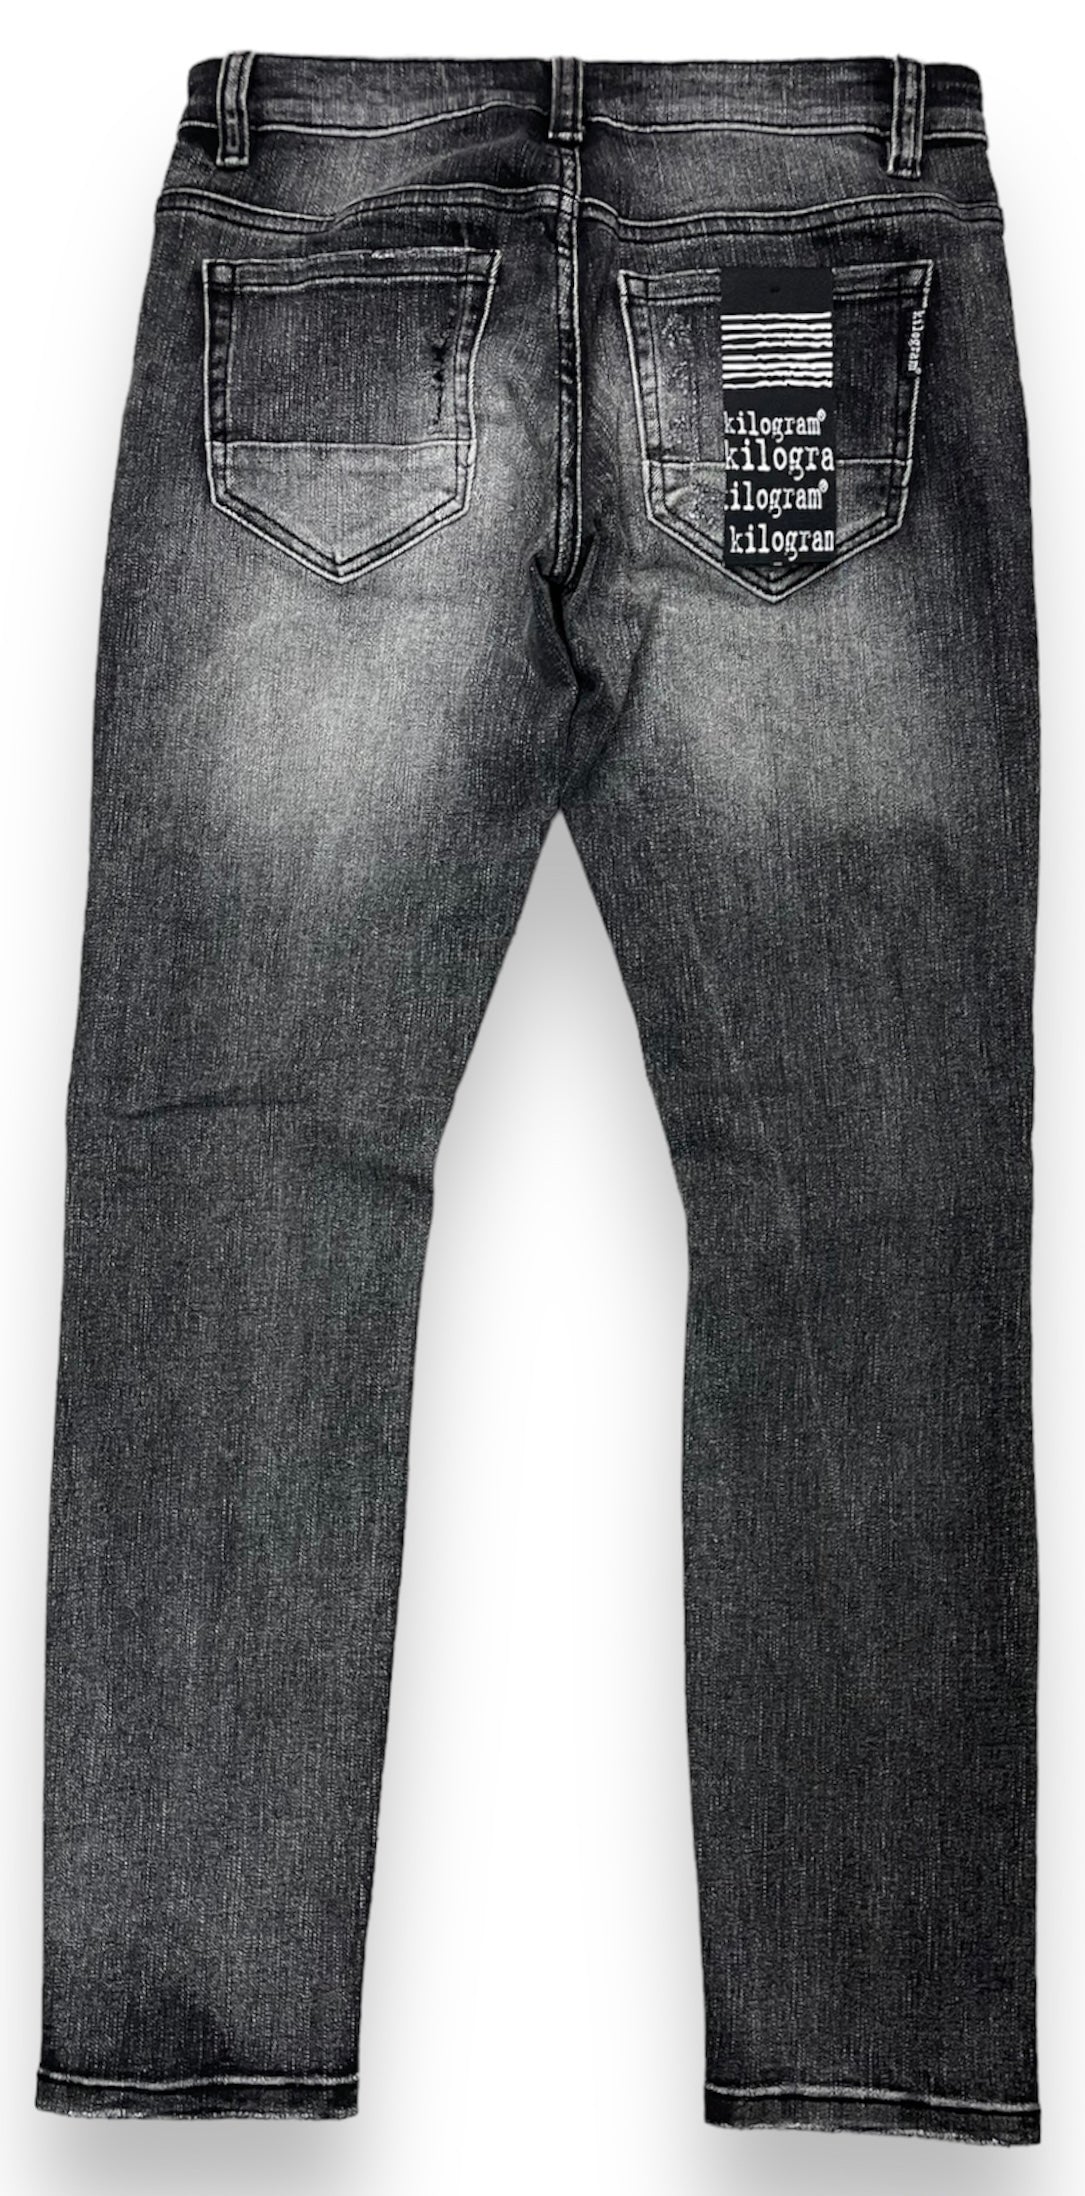 Kilogram Jeans